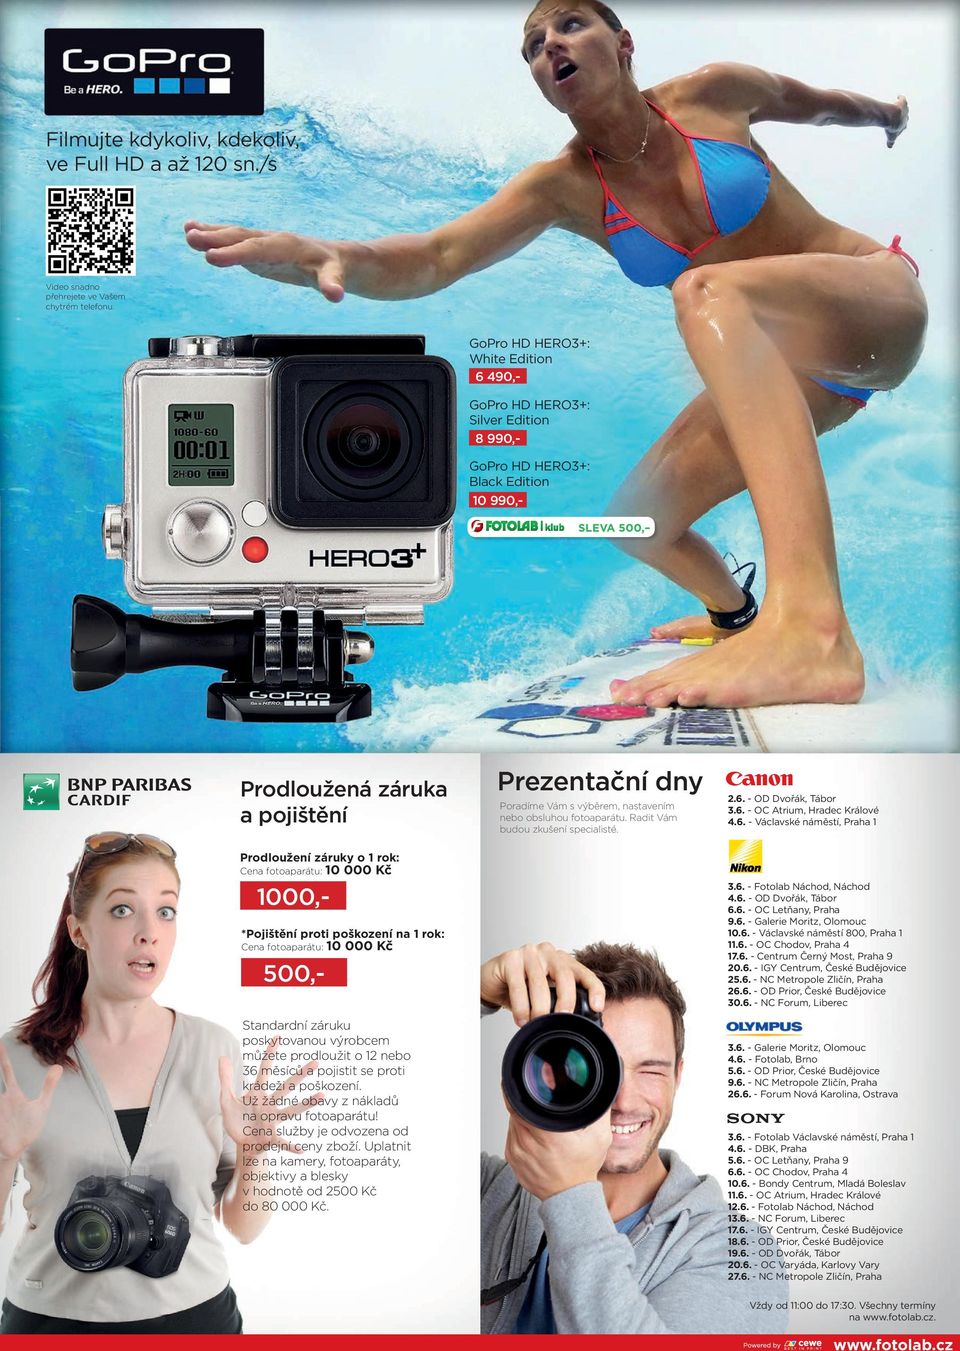 poškození na 1 rok: Cena fotoaparátu: 10 000 Kč GoPro HD HERO3+: Black Edition 10 990,- 1000,- 500,- Standardní záruku poskytovanou výrobcem můžete prodloužit o 12 nebo 36 měsíců a pojistit se proti